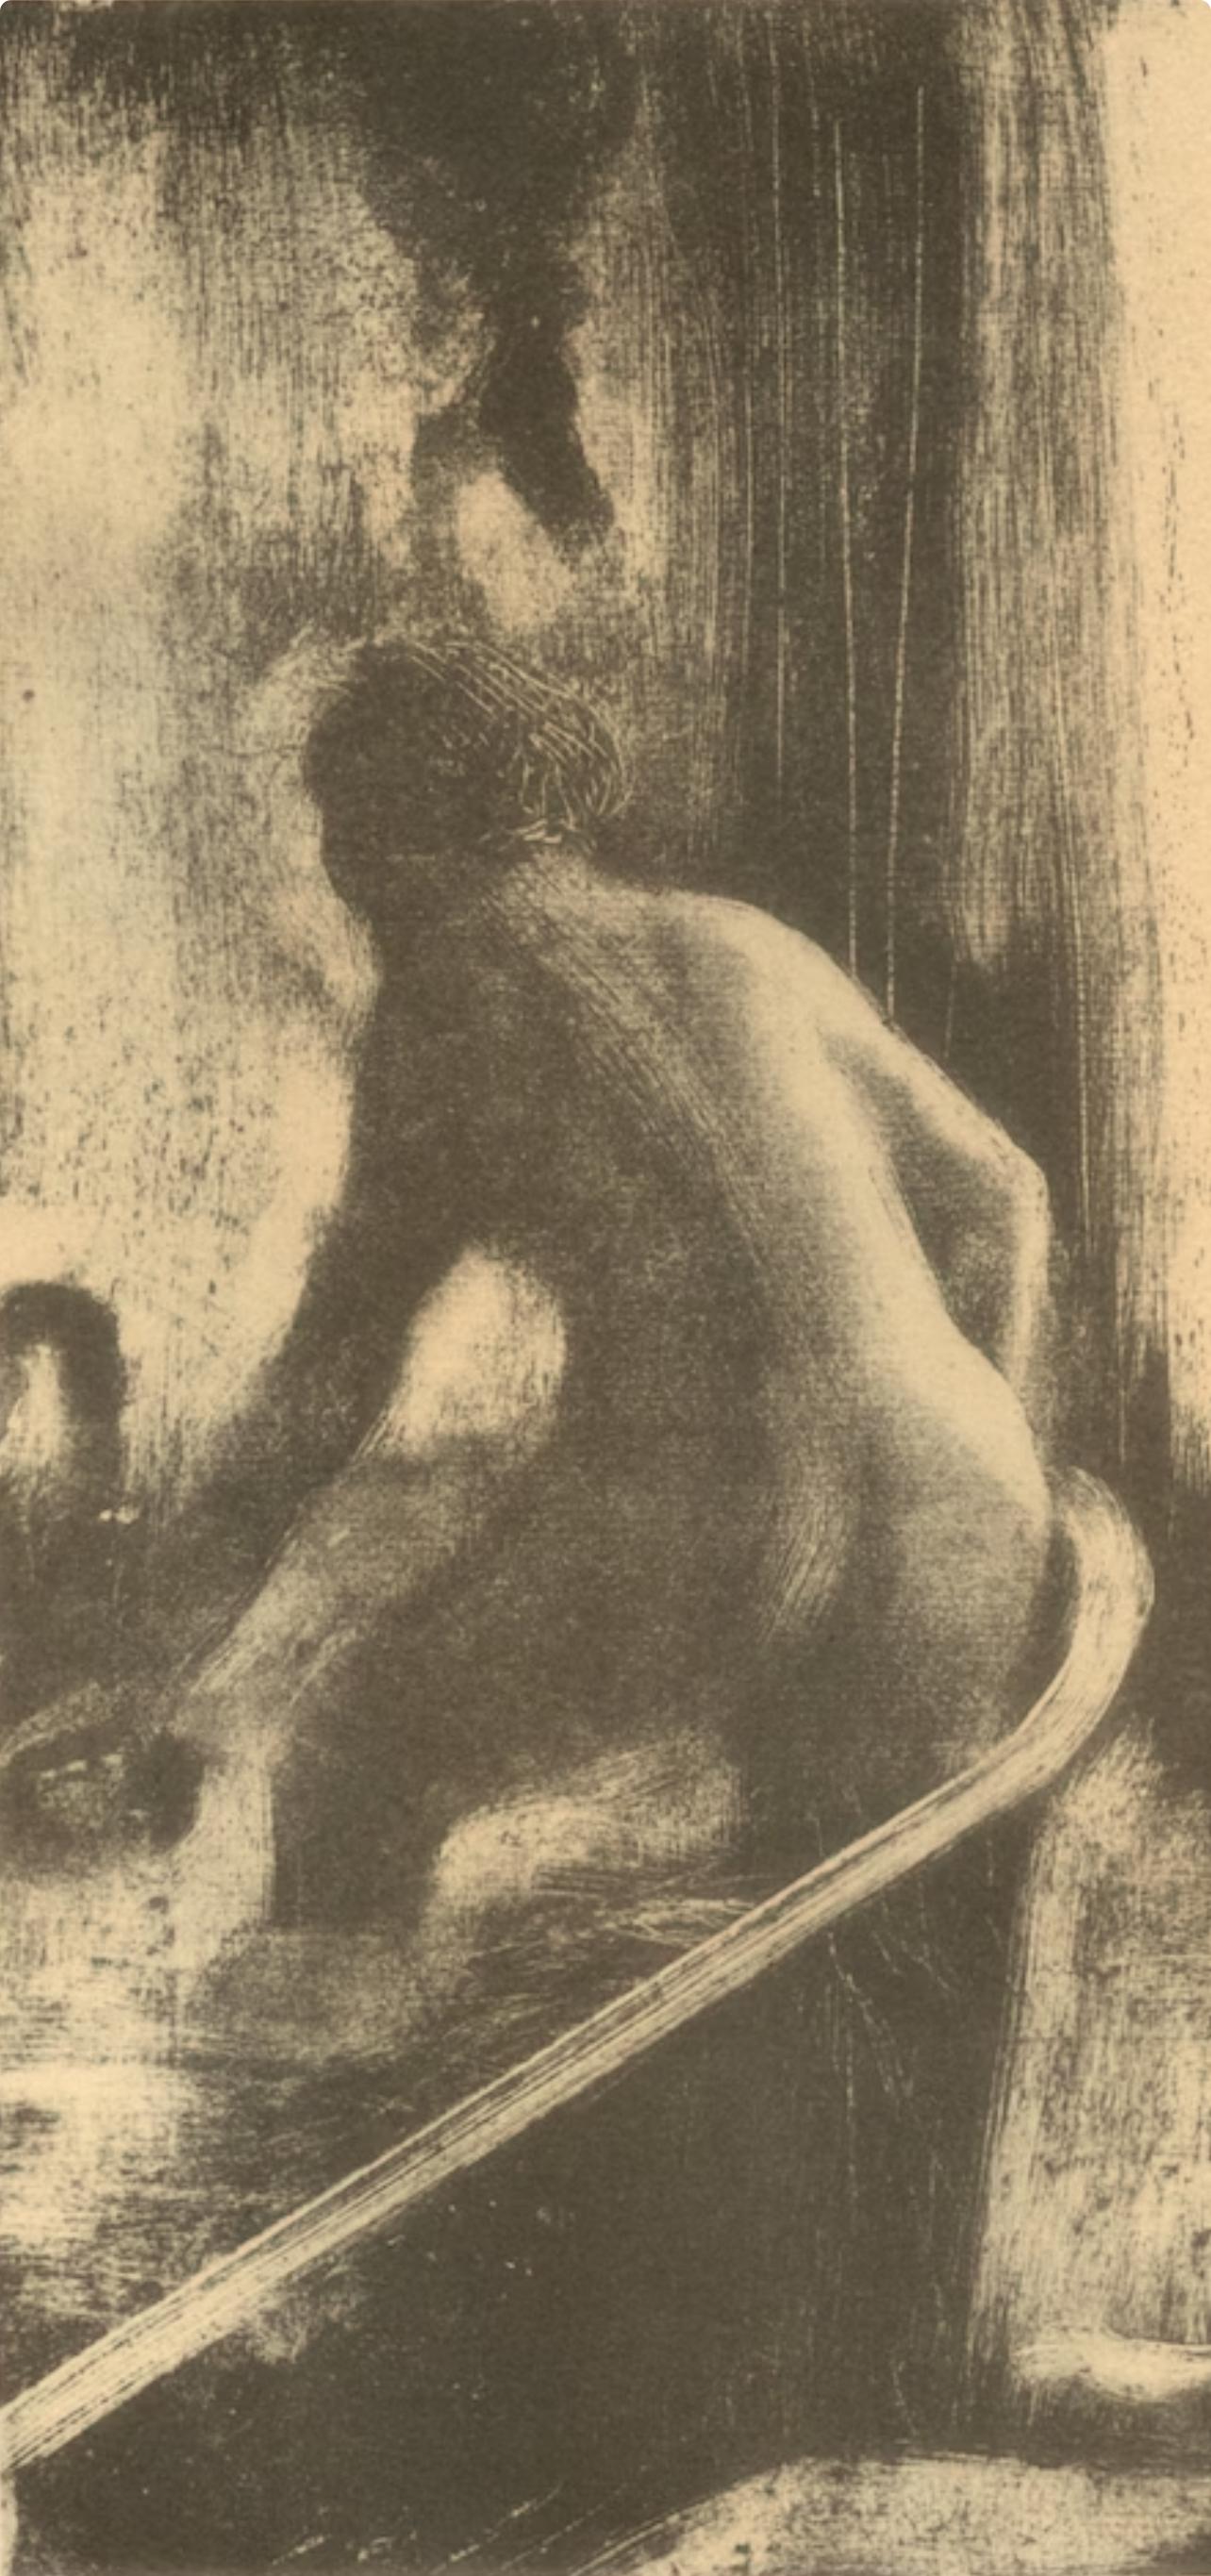 Degas, Femme dans la Baignoire, Les Monotypes (after) - Print by Edgar Degas